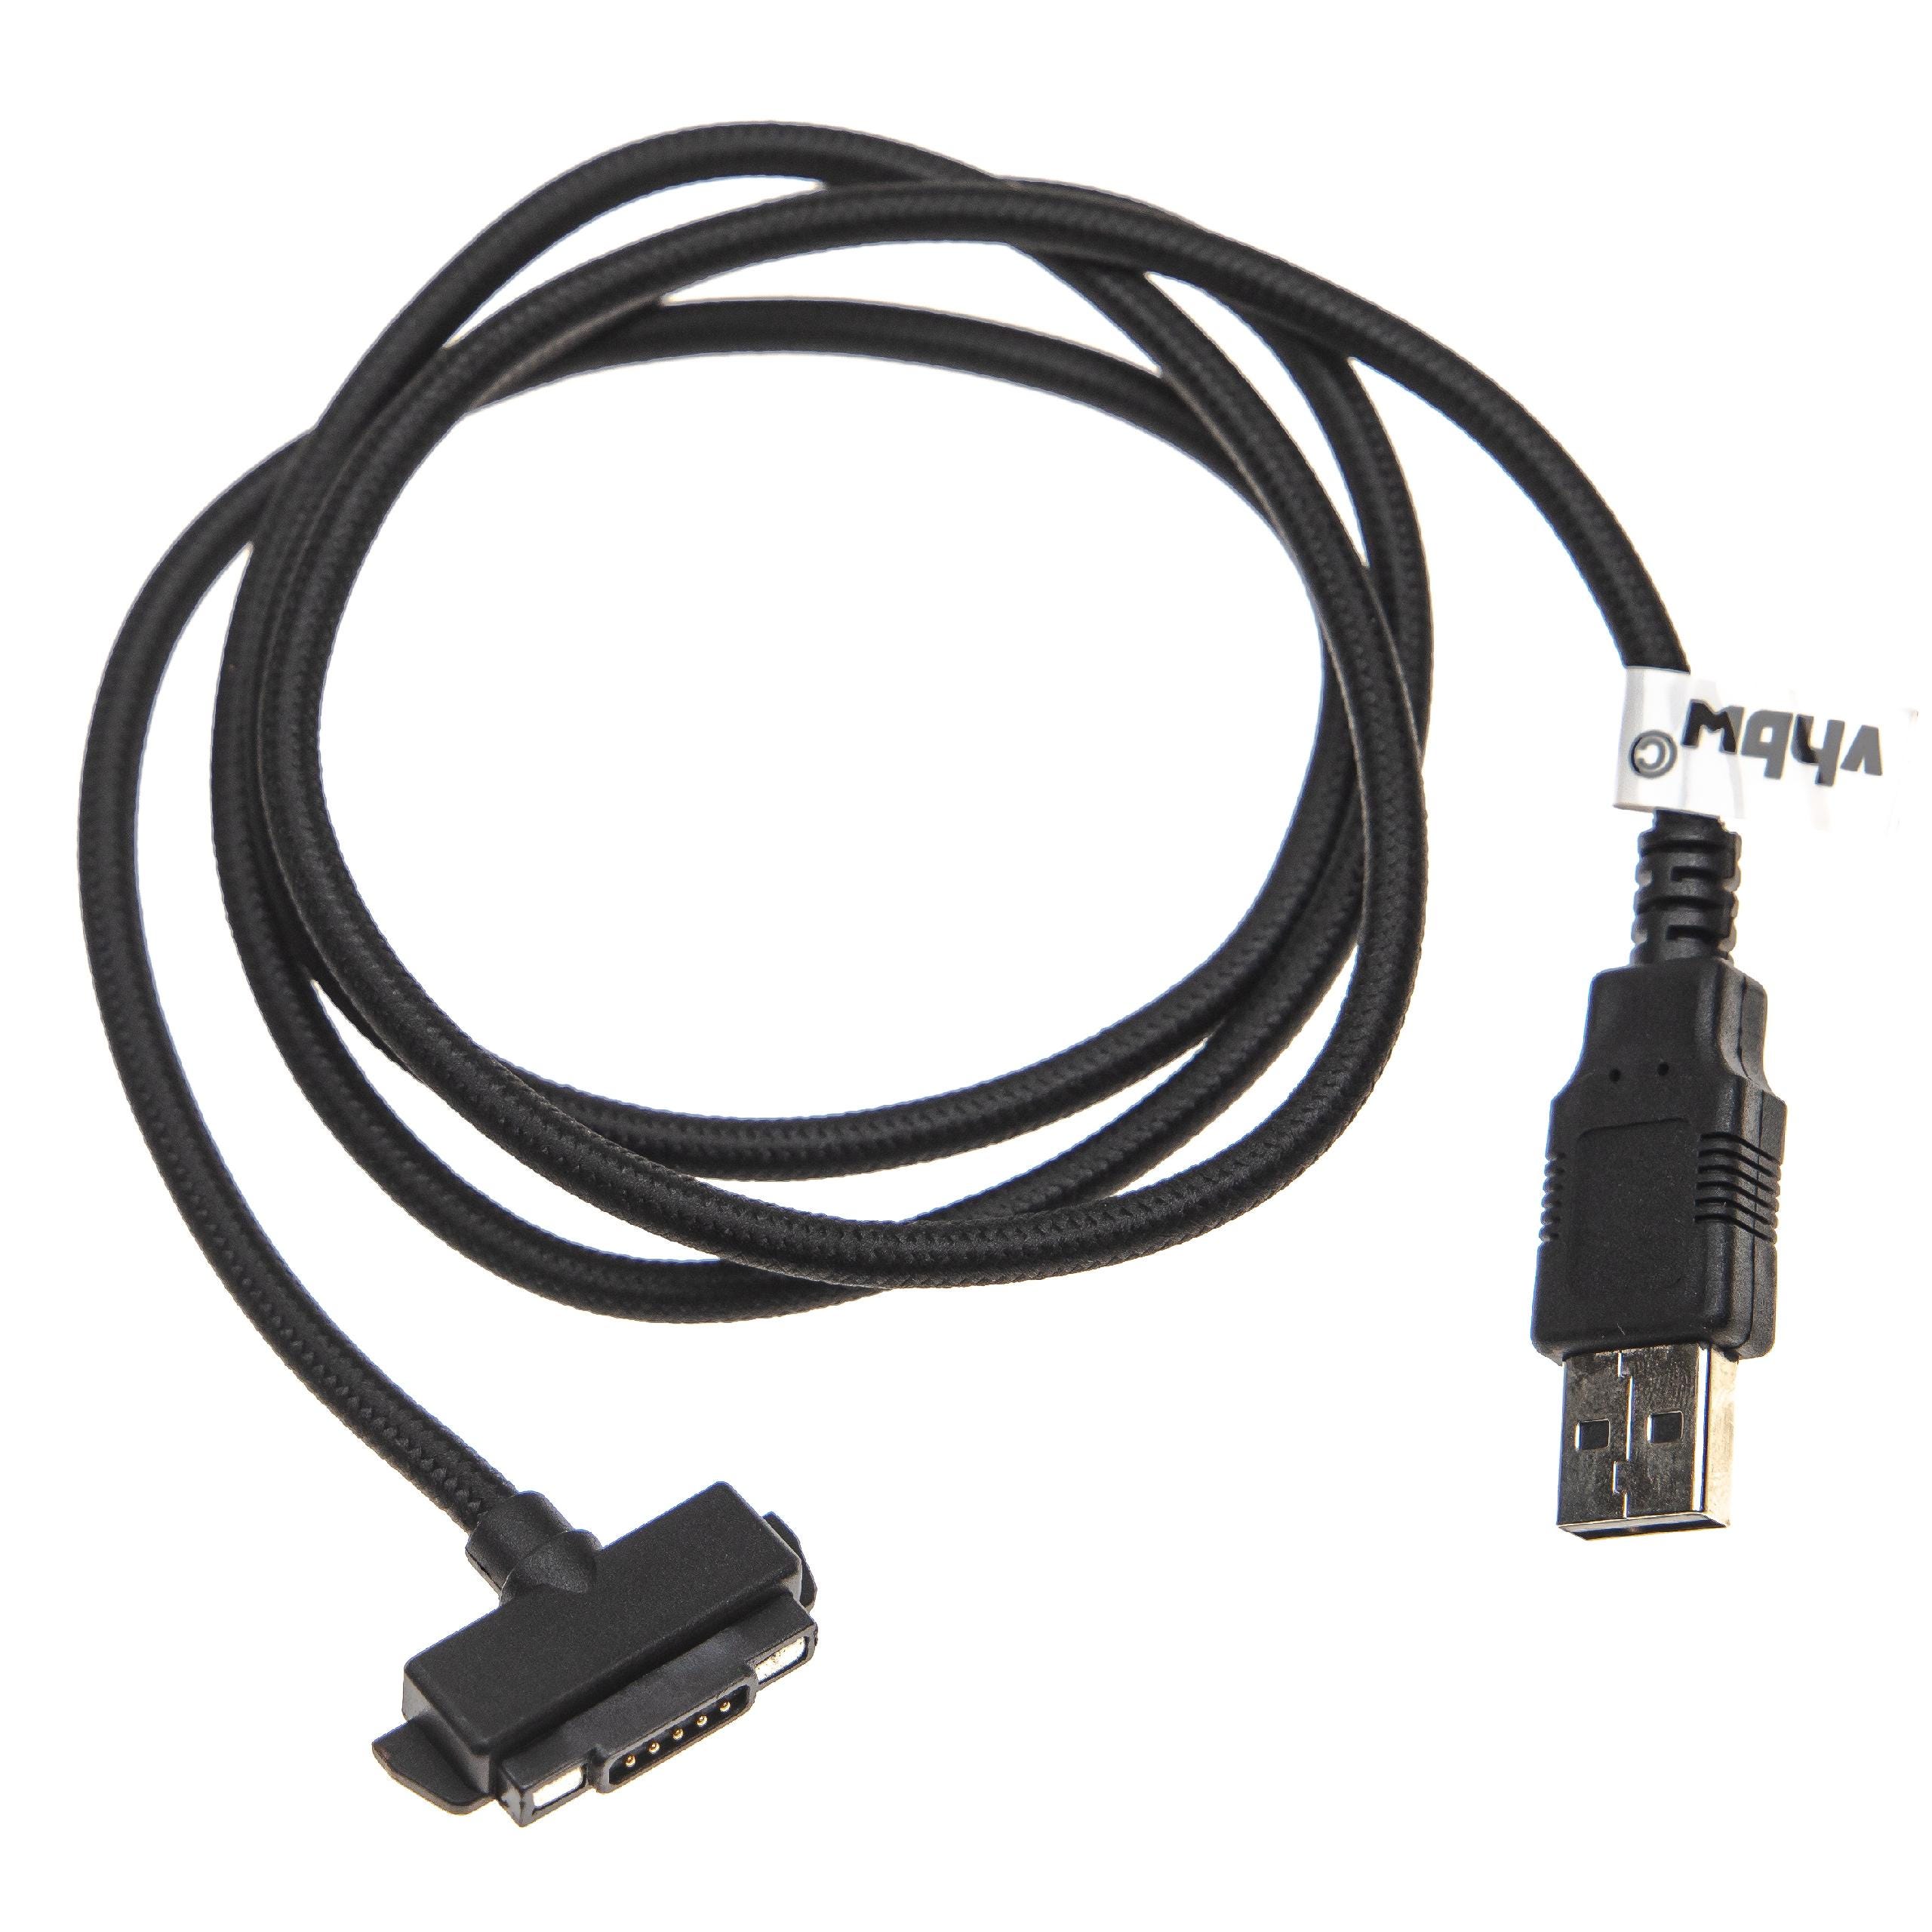 Vhbw - vhbw Câble de chargement USB, chargeur USB compatible avec